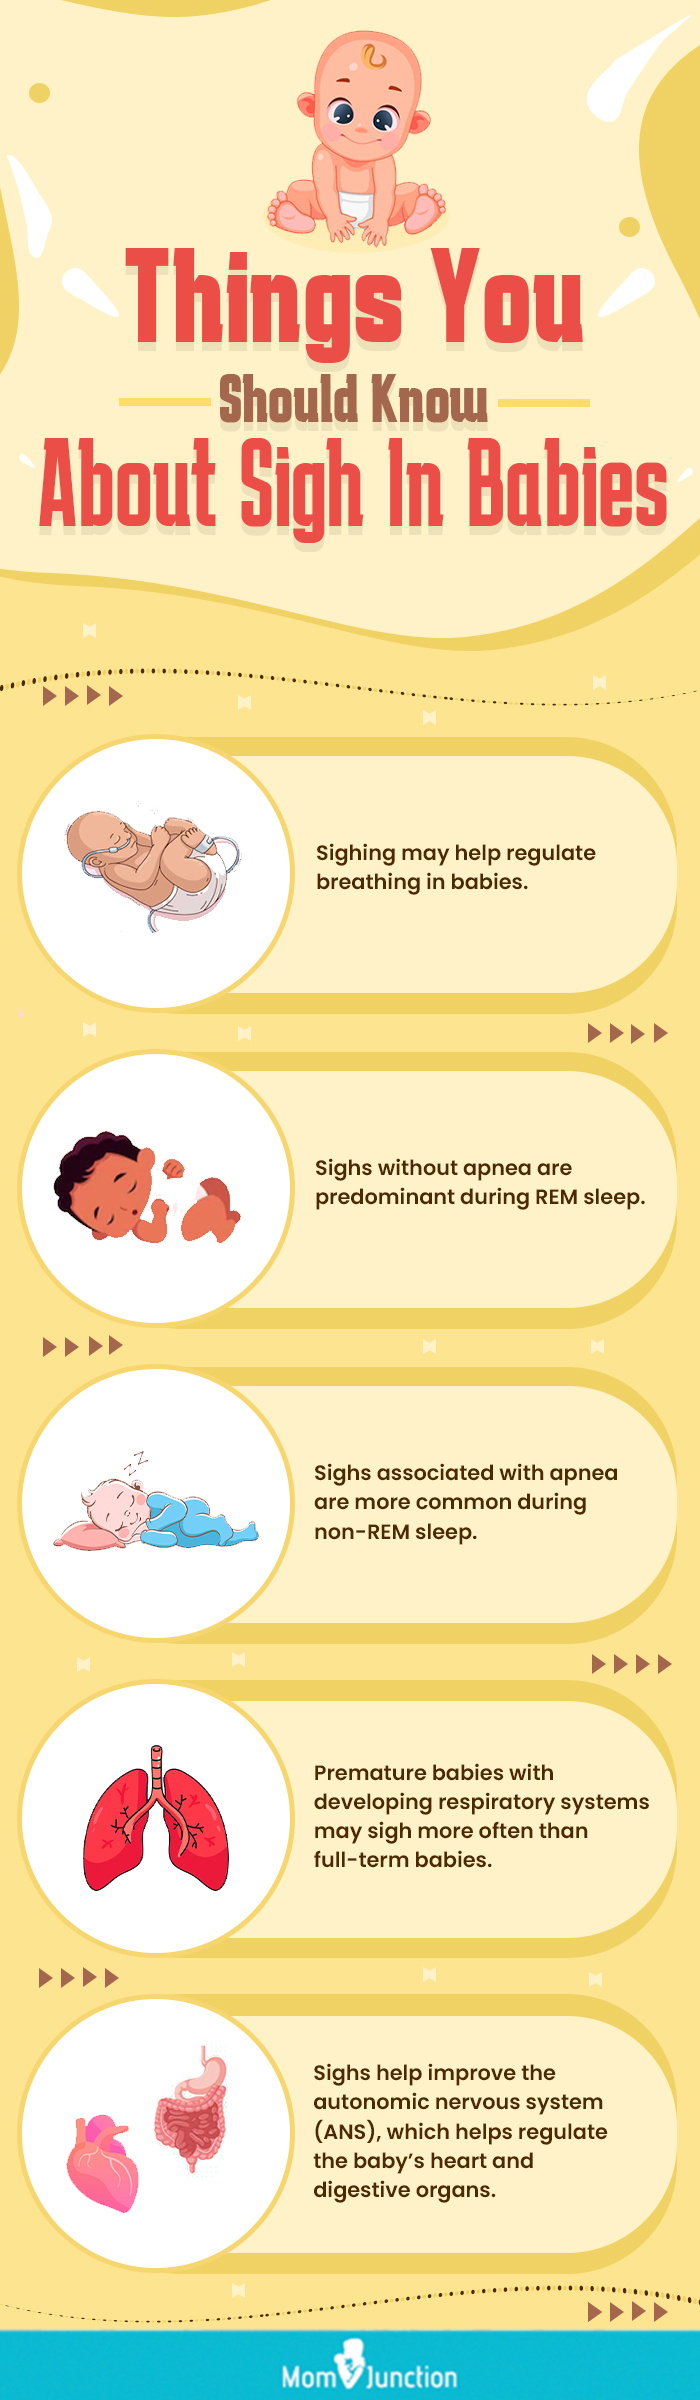 关于婴儿叹息你应该知道的事情(信息图)